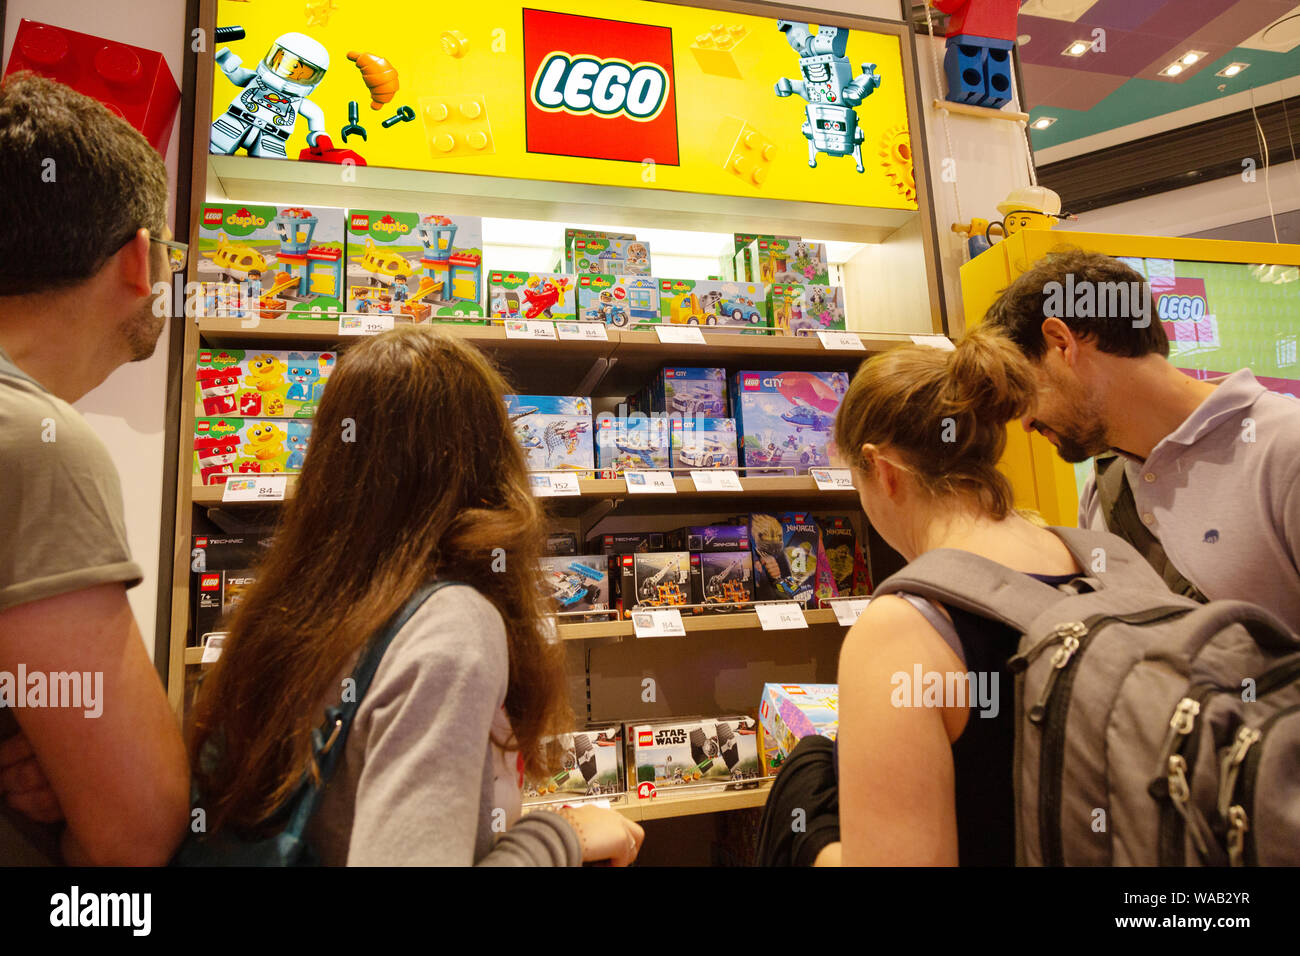 Lego Danimarca - persone che acquistano lego presso un negozio lego, l'aeroporto di Copenaghen, Copenaghen, Danimarca Scandinavia Foto Stock